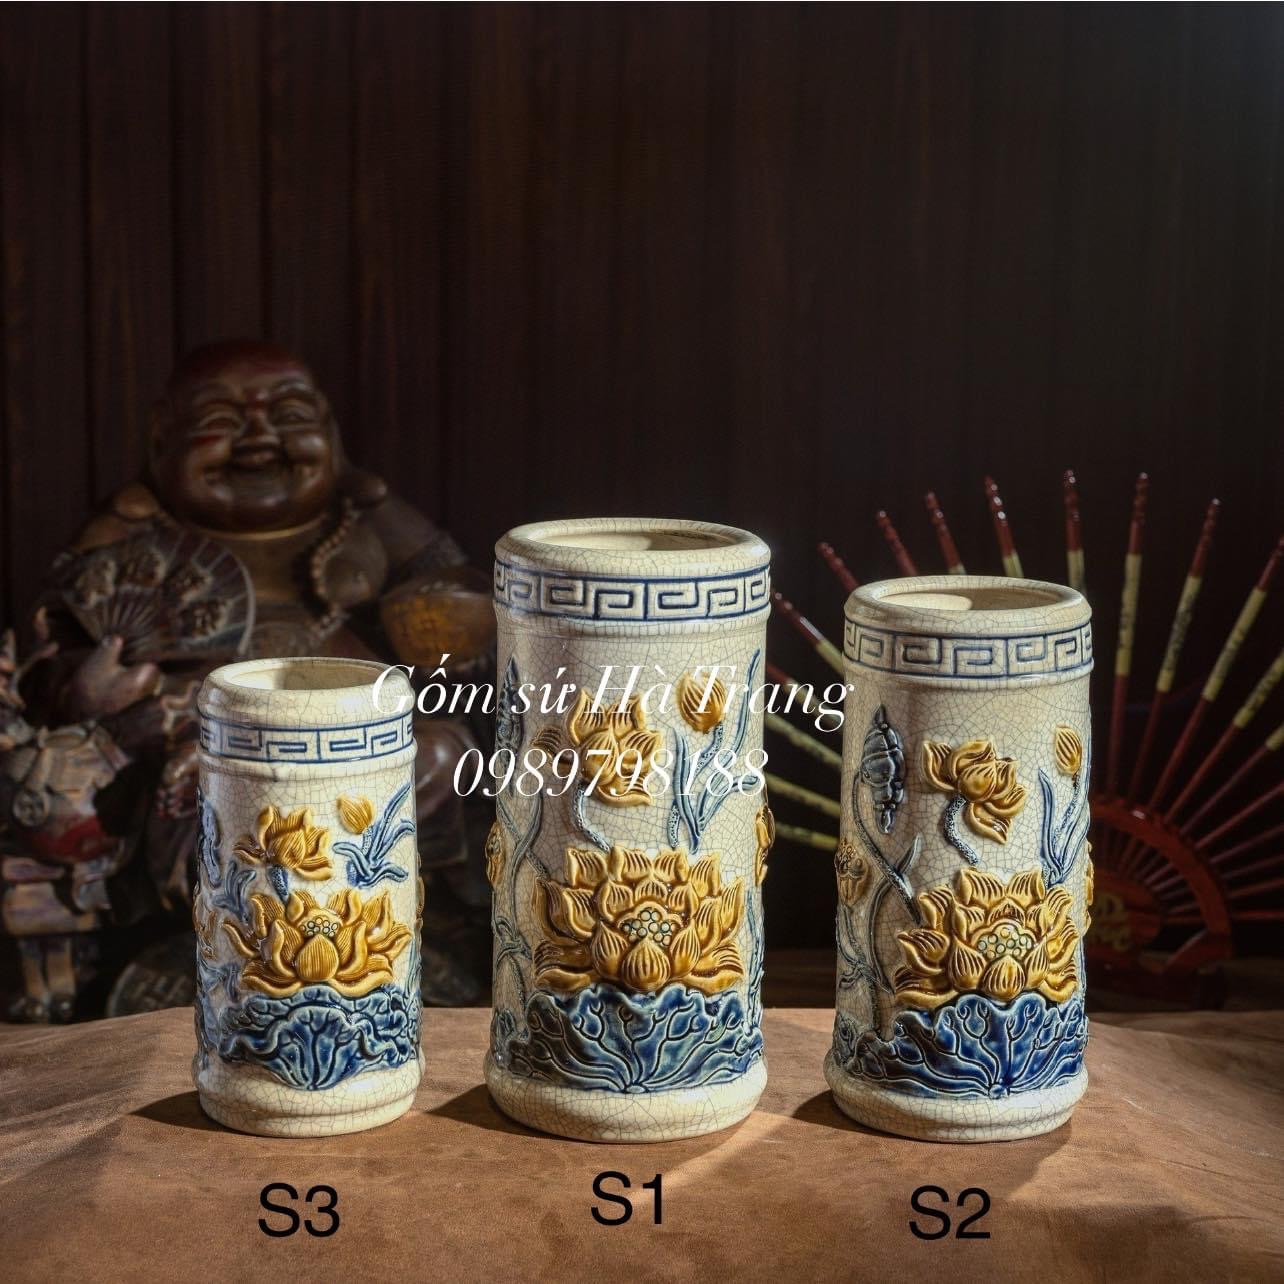 Các món lẻ trong bộ đồ thờ gốm sứ Bát Tràng cao cấp men rạn hoạ tiết sen phú quý nổi GSTL01